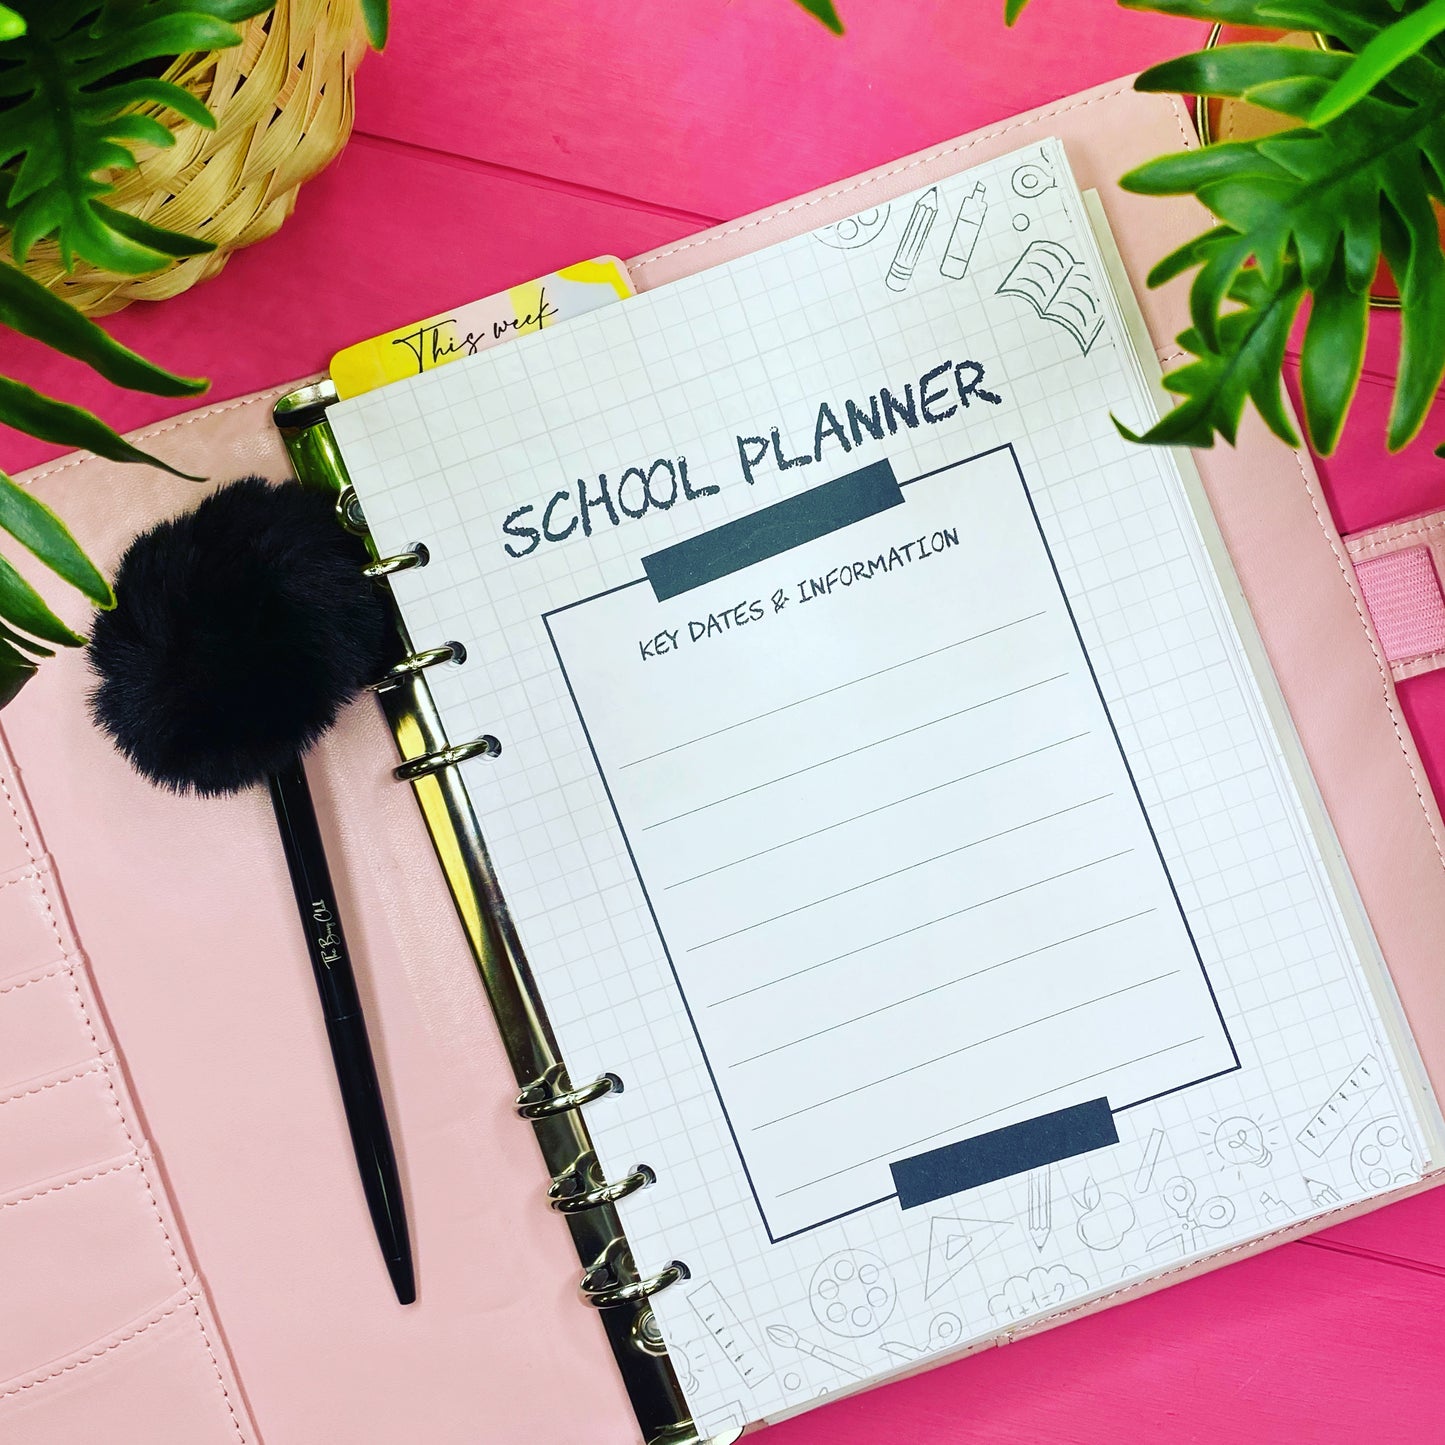 'School Planner' Binder Insert